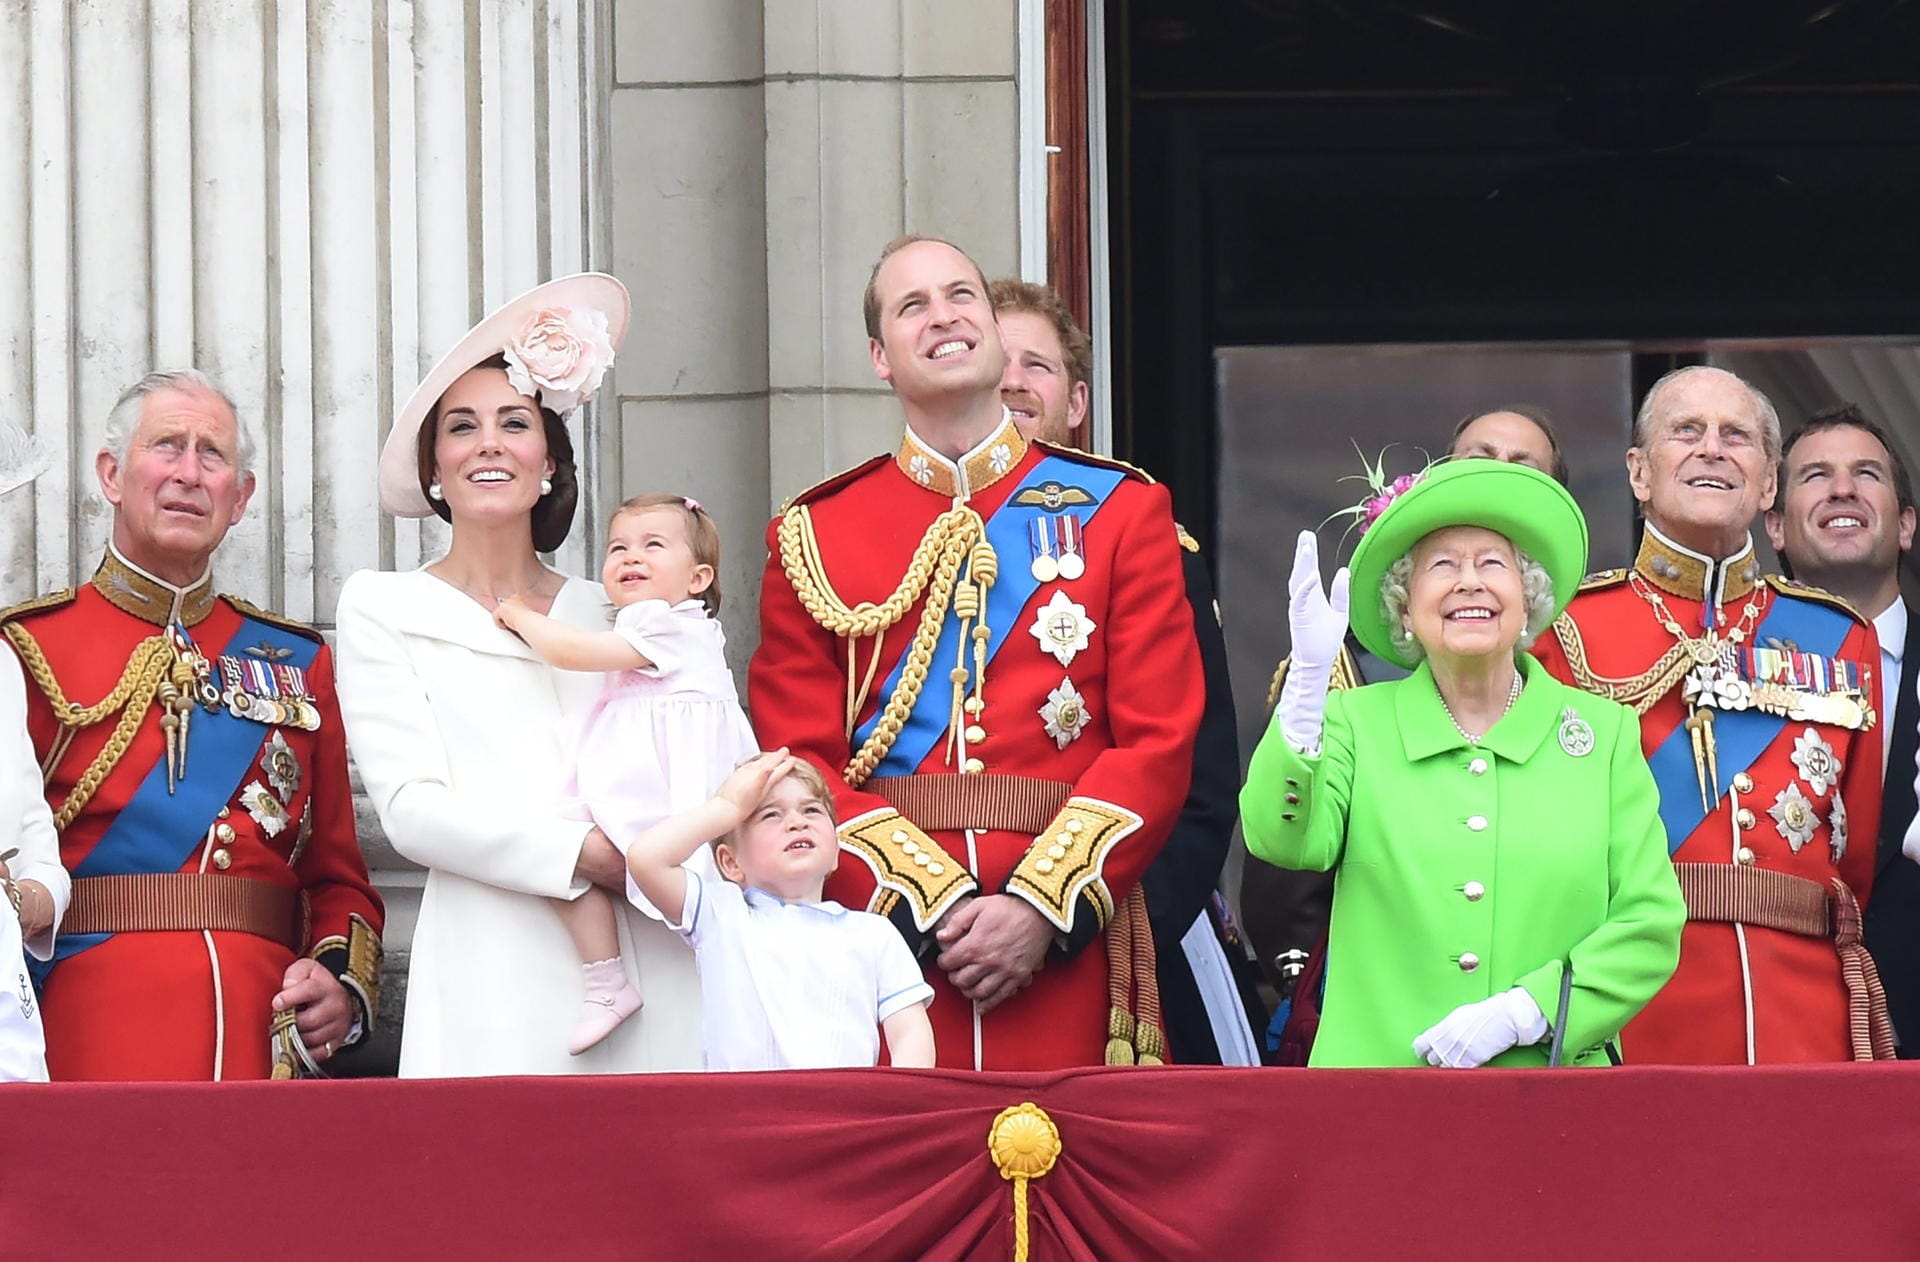 Am 21. Juni 2016 fand die traditionelle Geburtstagsparade für die Queen, "Trooping the Colour", in London statt. Um bei den Feiern zu ihrem 90. Geburtstag auch garantiert nicht übersehen zu werden, wählte Elizabeth einen Mantel in der wohl schrillste Farbe, die sie finden konnte. Trotzdem stahlen ihr Kate, William und ihre Kinder George und Charlotte auf dem Balkon des Buckingham Palastes mühelos die Show.